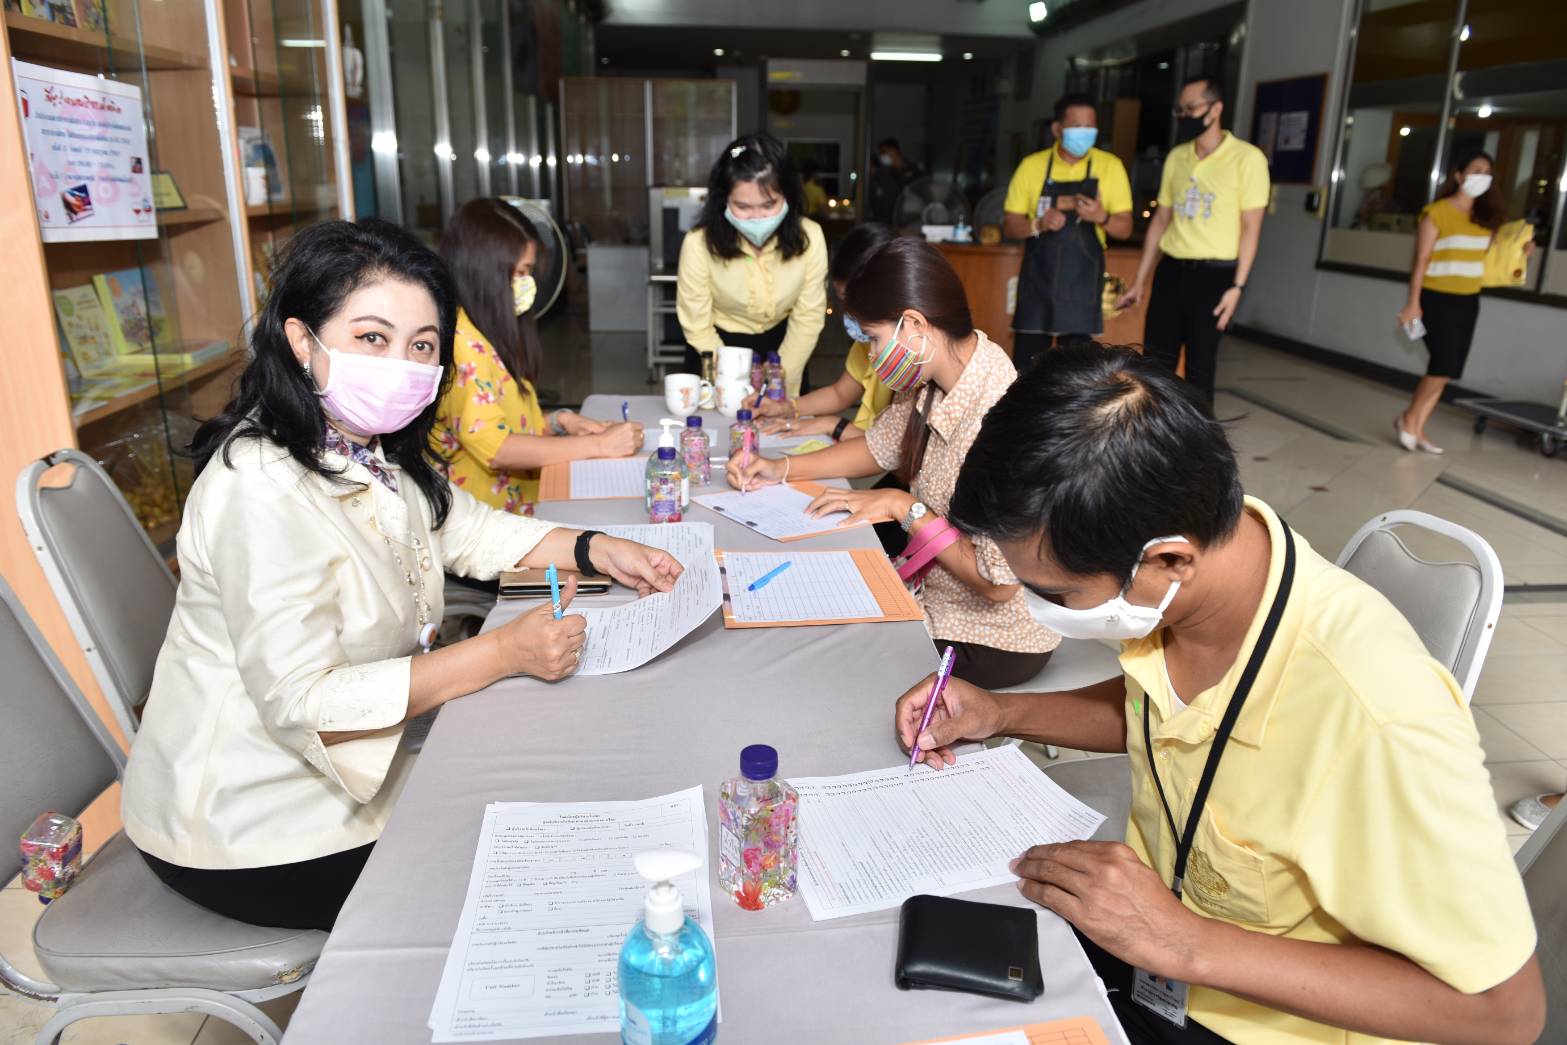 สำนักงานเลขาธิการวุฒิสภา ร่วมกับ ศูนย์บริการโลหิตแห่งชาติ สภากาชาดไทย จัดกิจกรรมบริจาคโลหิต ประจำปี พ.ศ. 2563 ครั้งที่ 3 